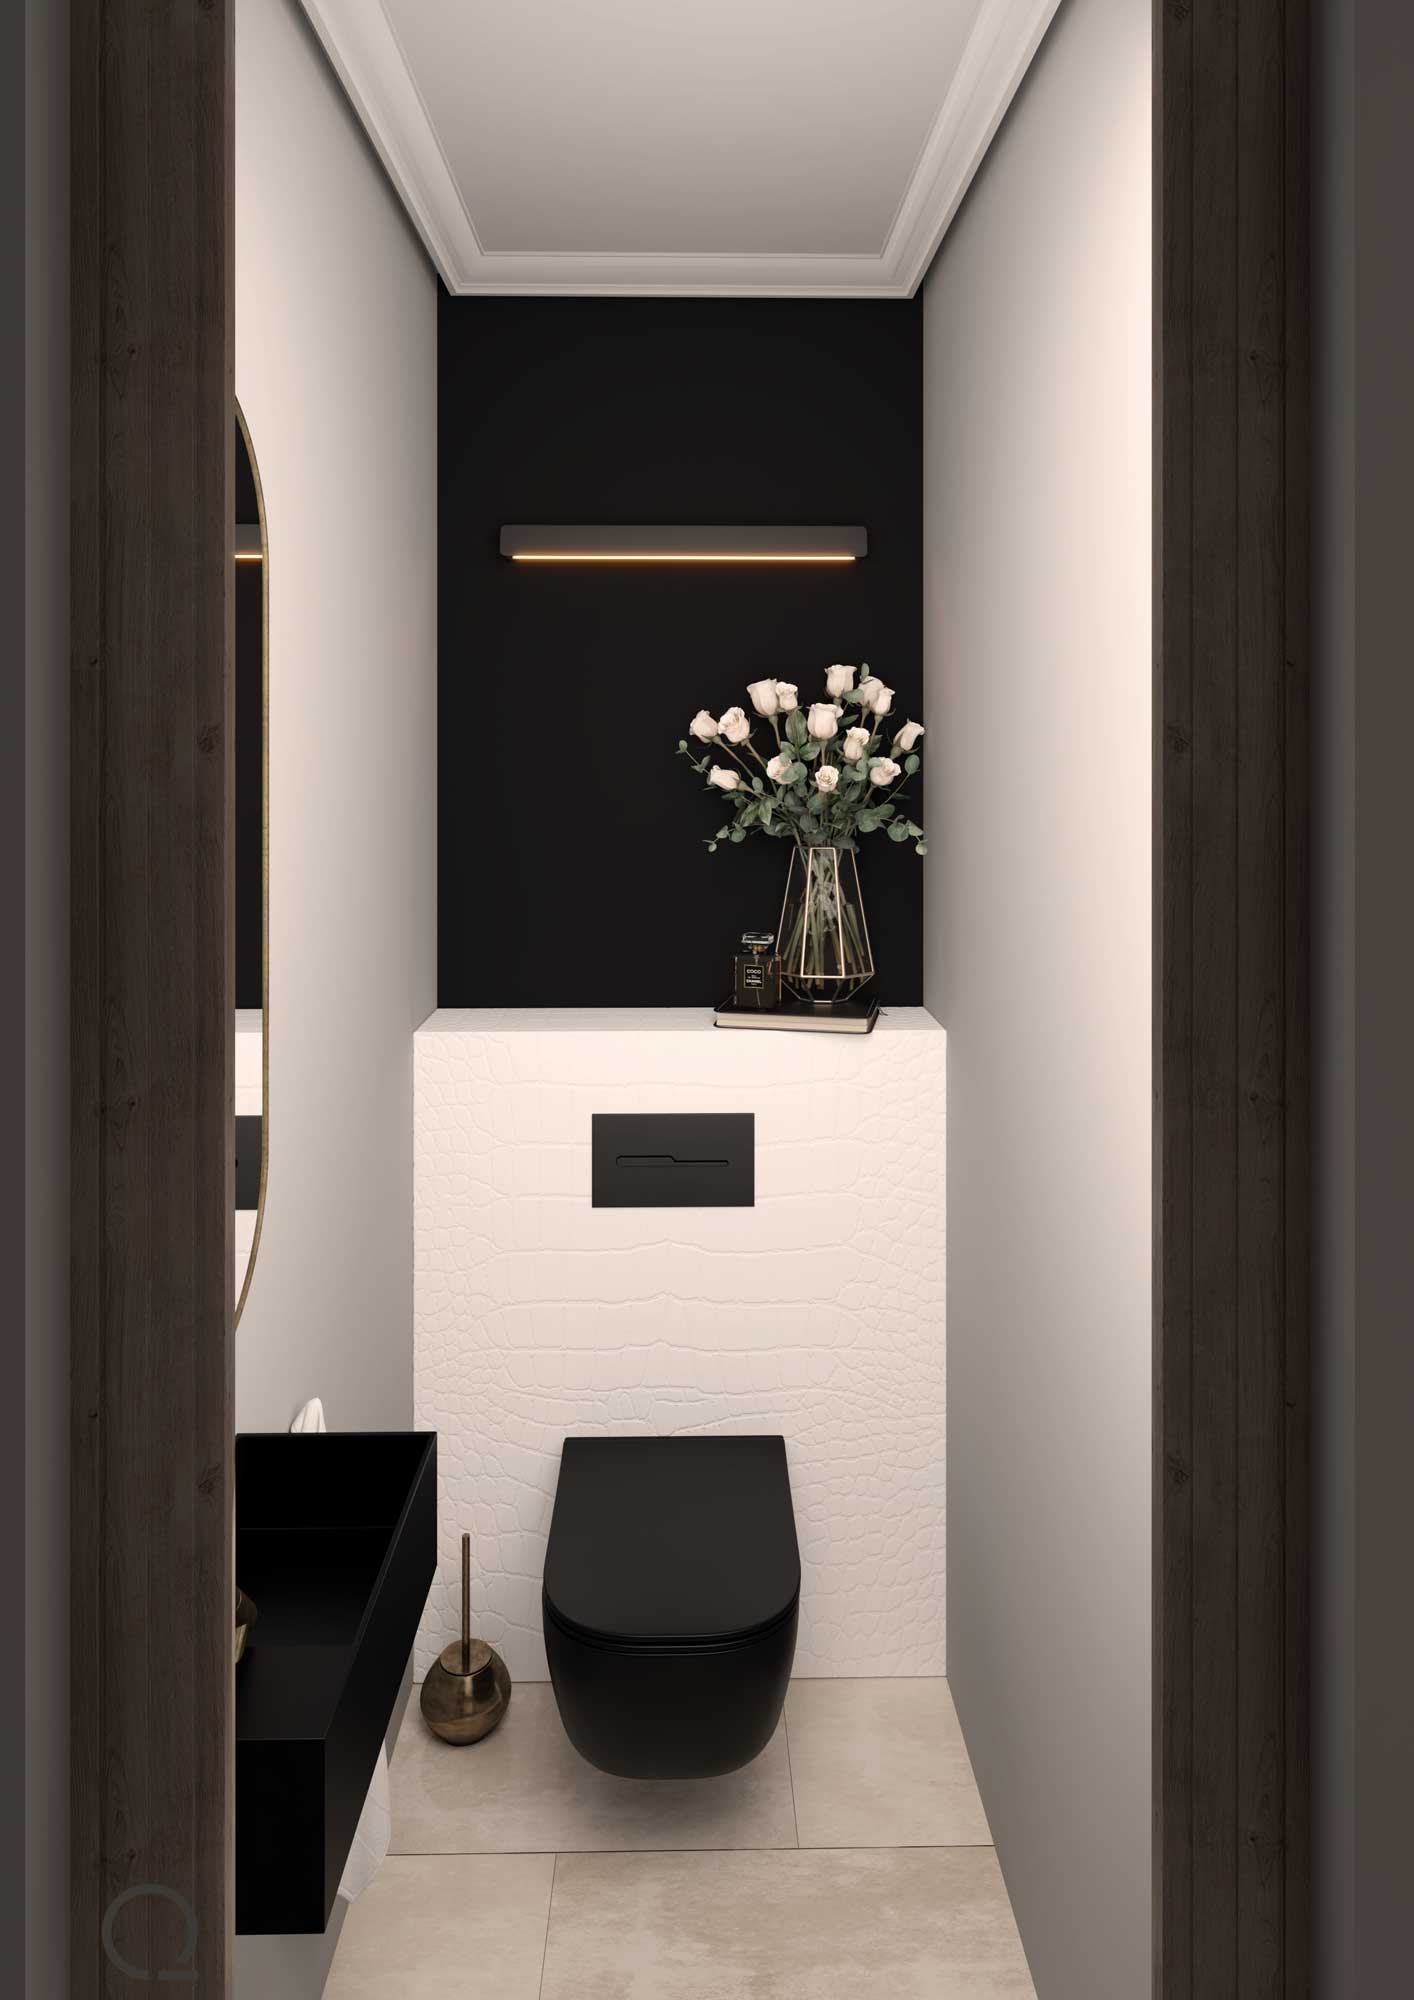 Tulip - Deco WC - Quare  Bathroom Design & Solutions